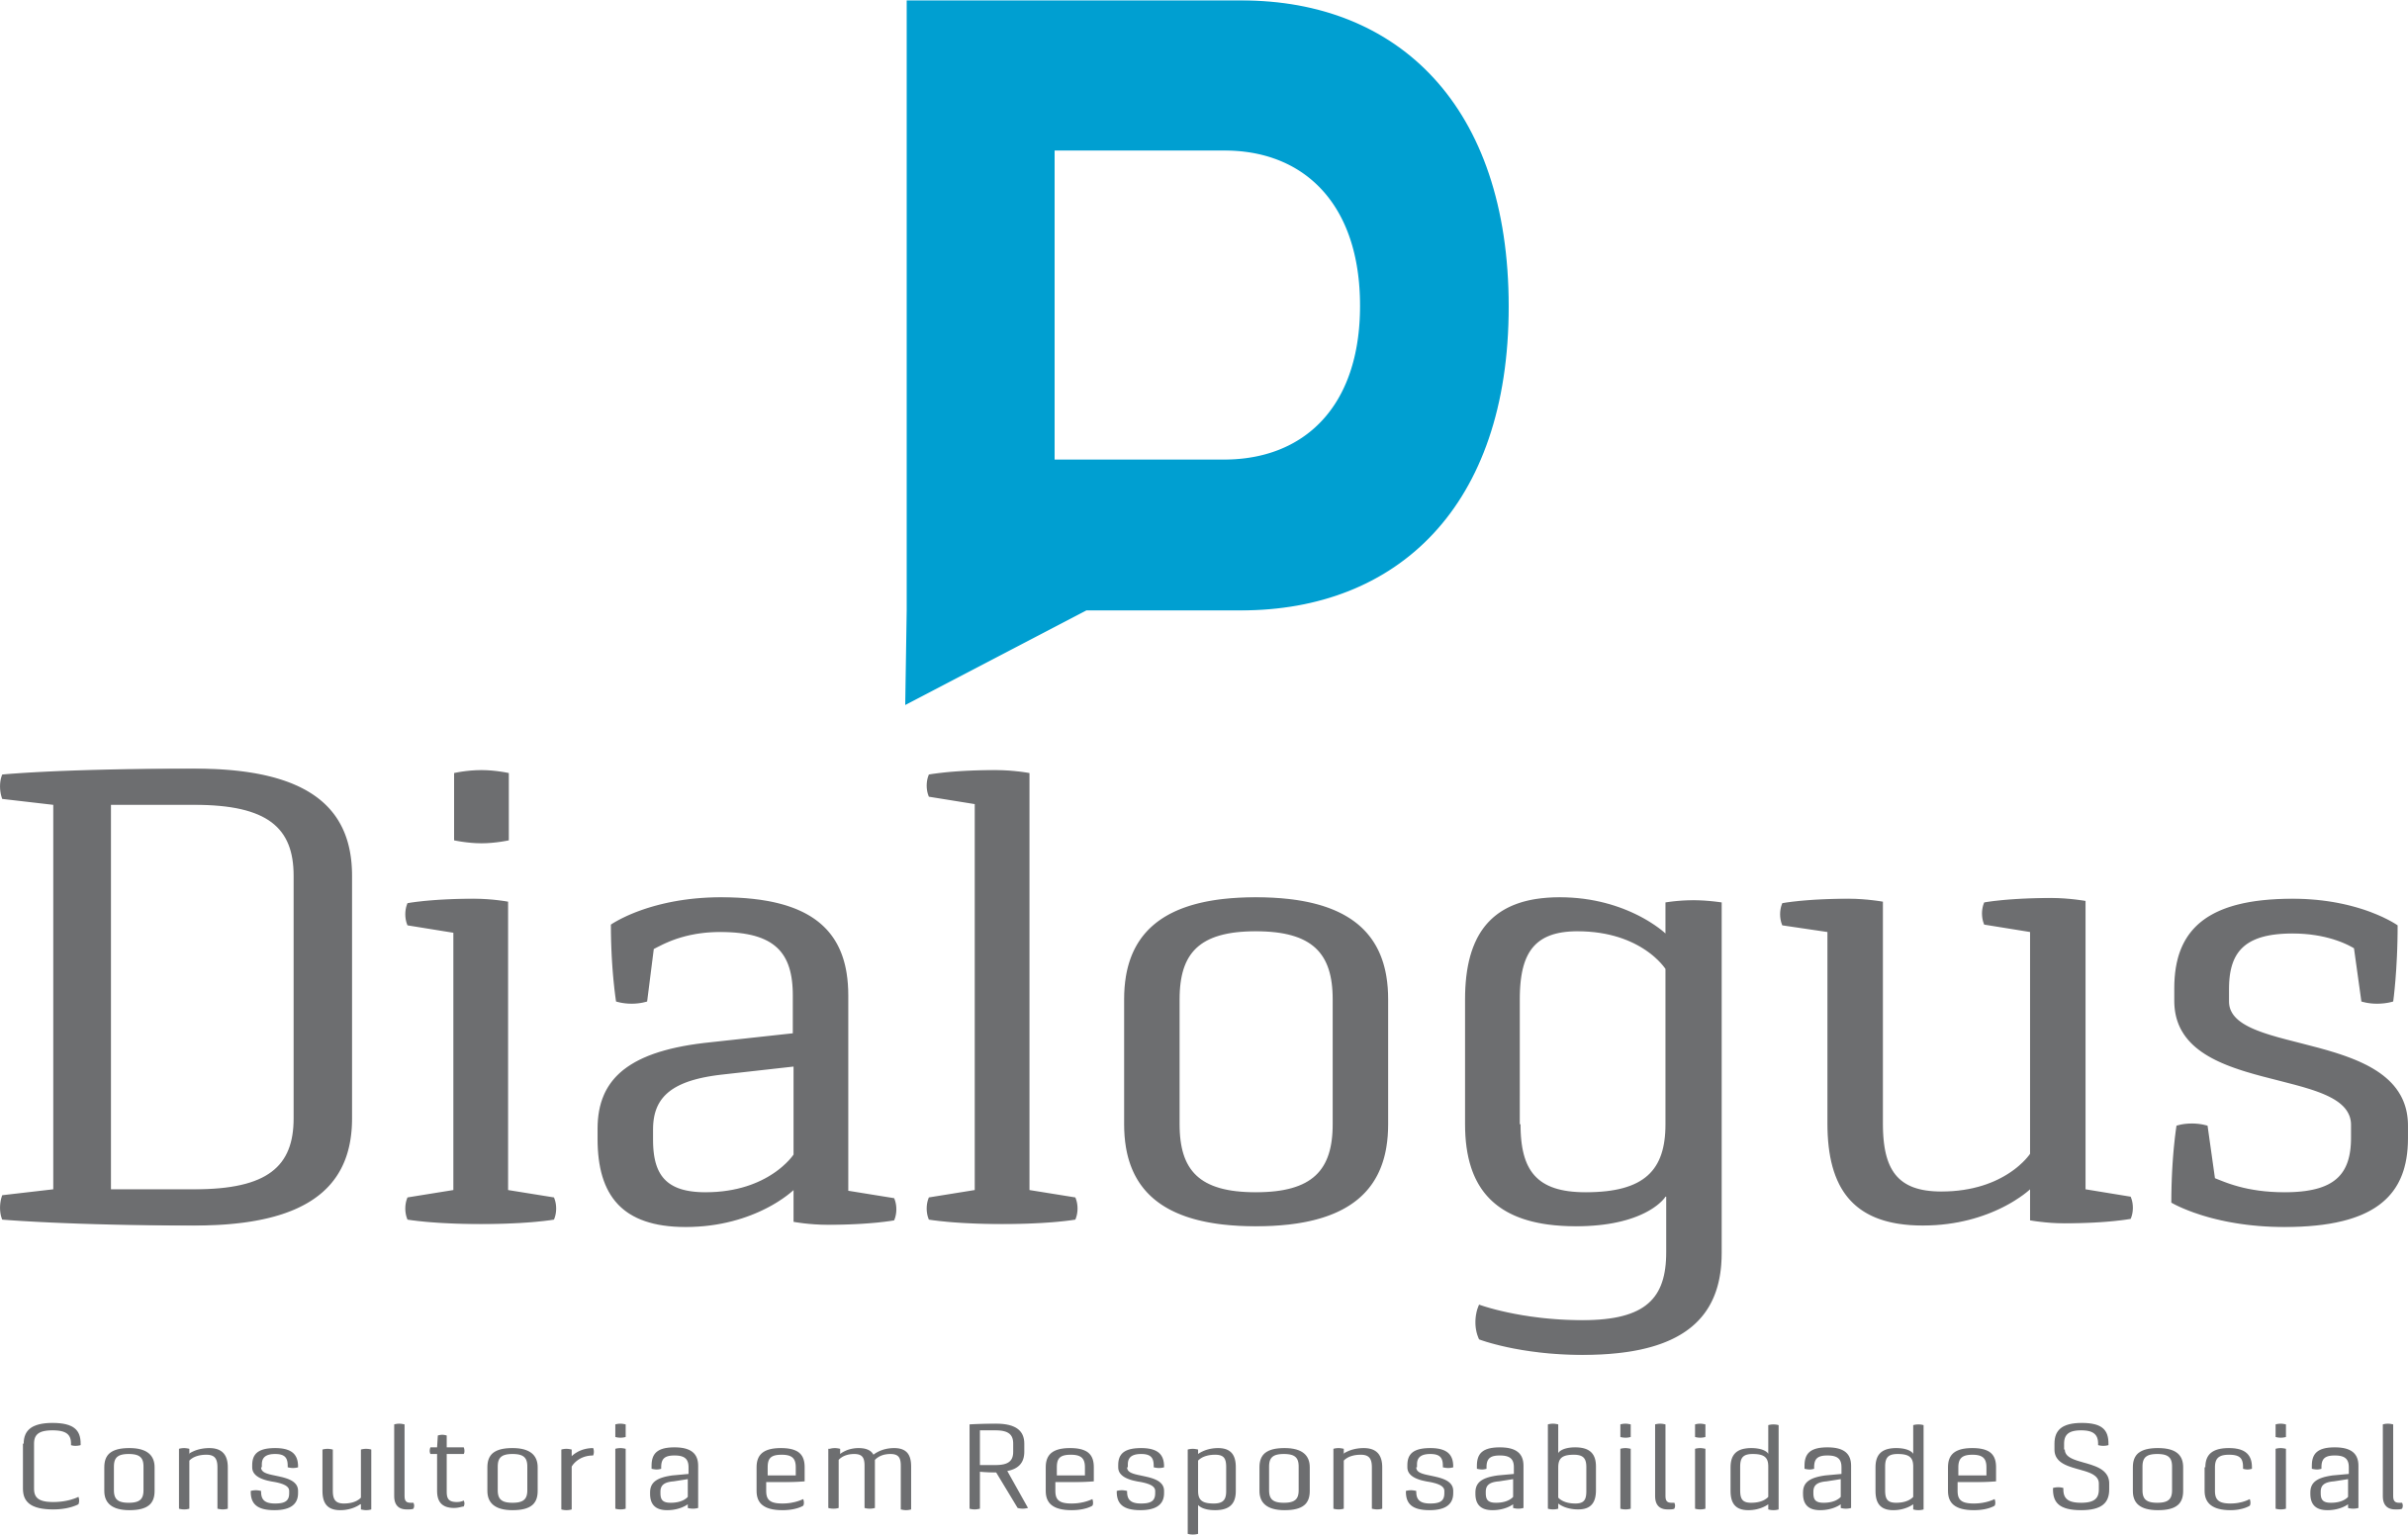 Dialogus Responsabilidade Social - Consultoria - Gestão da Diversidade e Inclusão - Fortaleza/CE